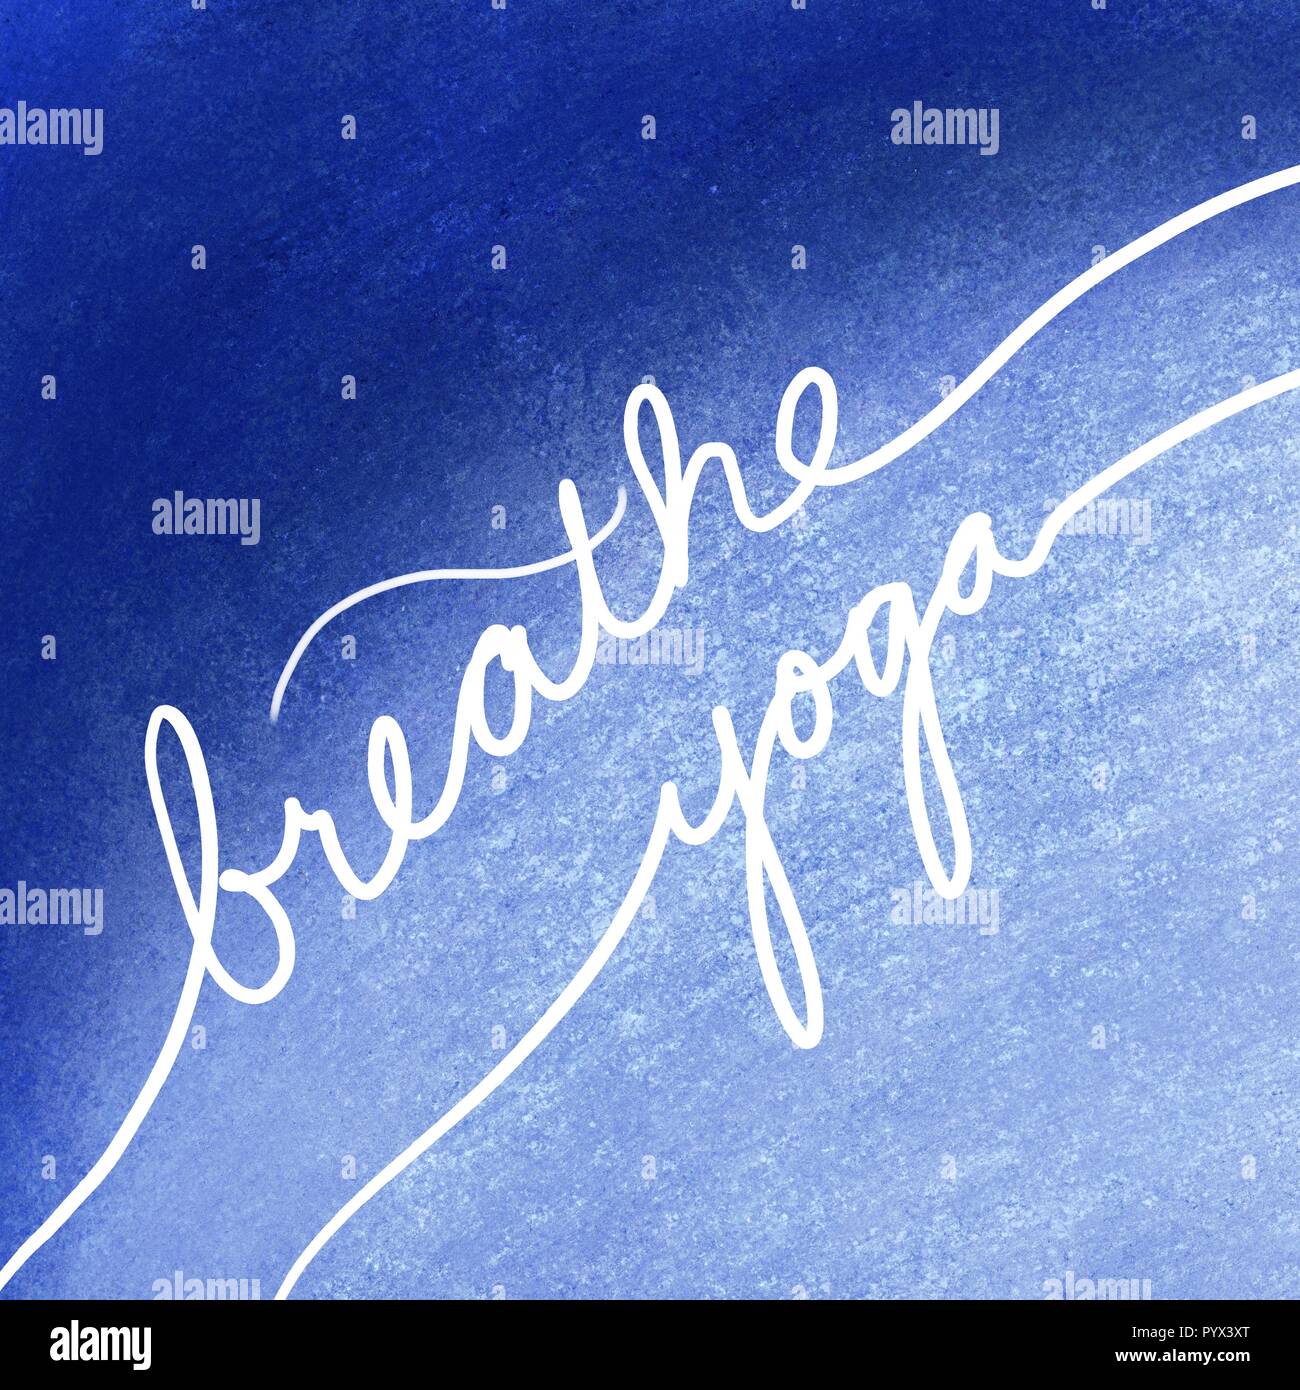 Respirare lo yoga in lettere bianche su sfondo blu, ispiratrice motivazionale o messaggio scritto a mano su esercizio e relax Foto Stock